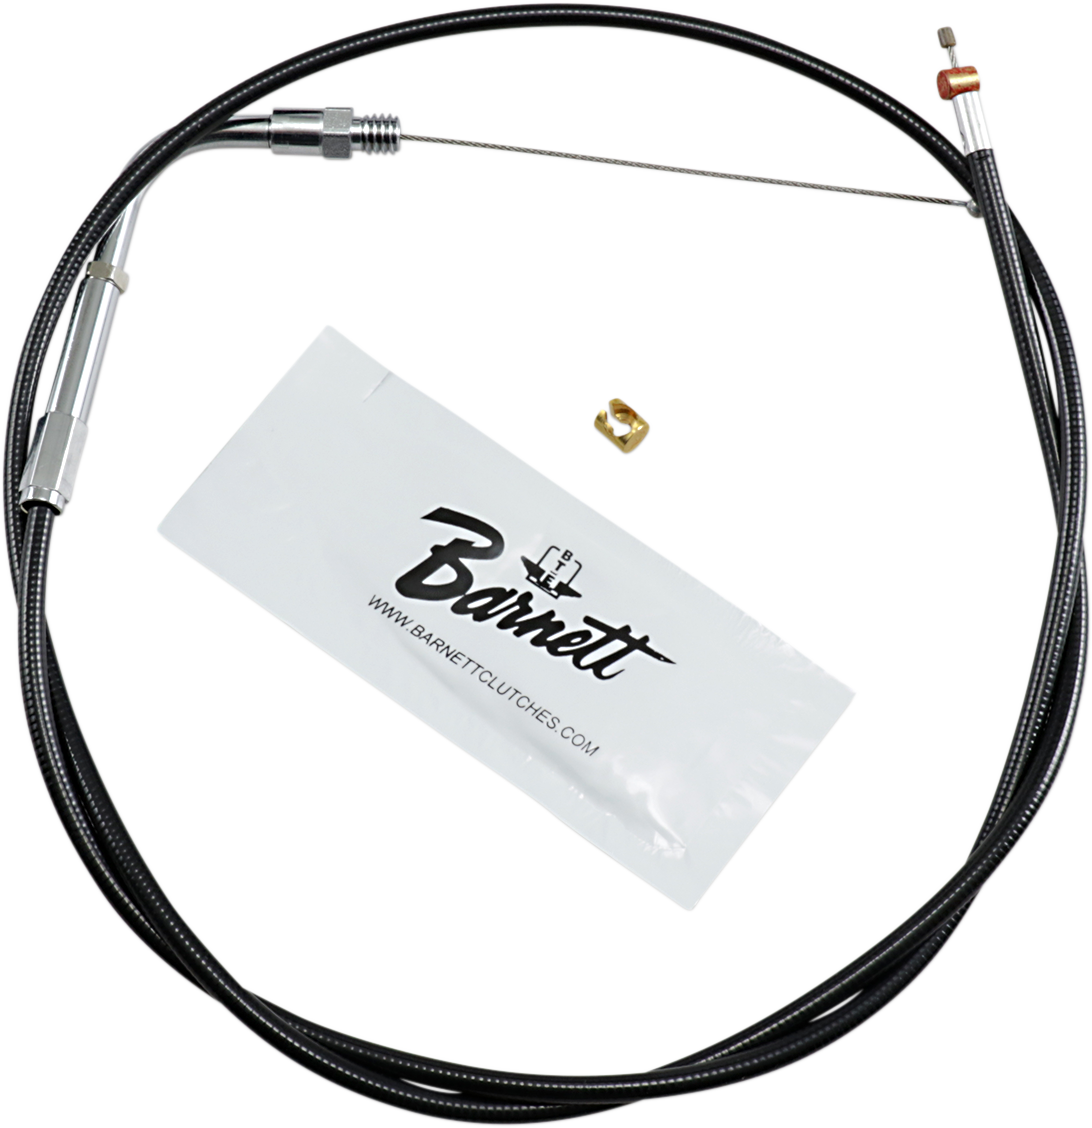 BARNETT Throttle Cable - +6" - Black 101-30-30014-06